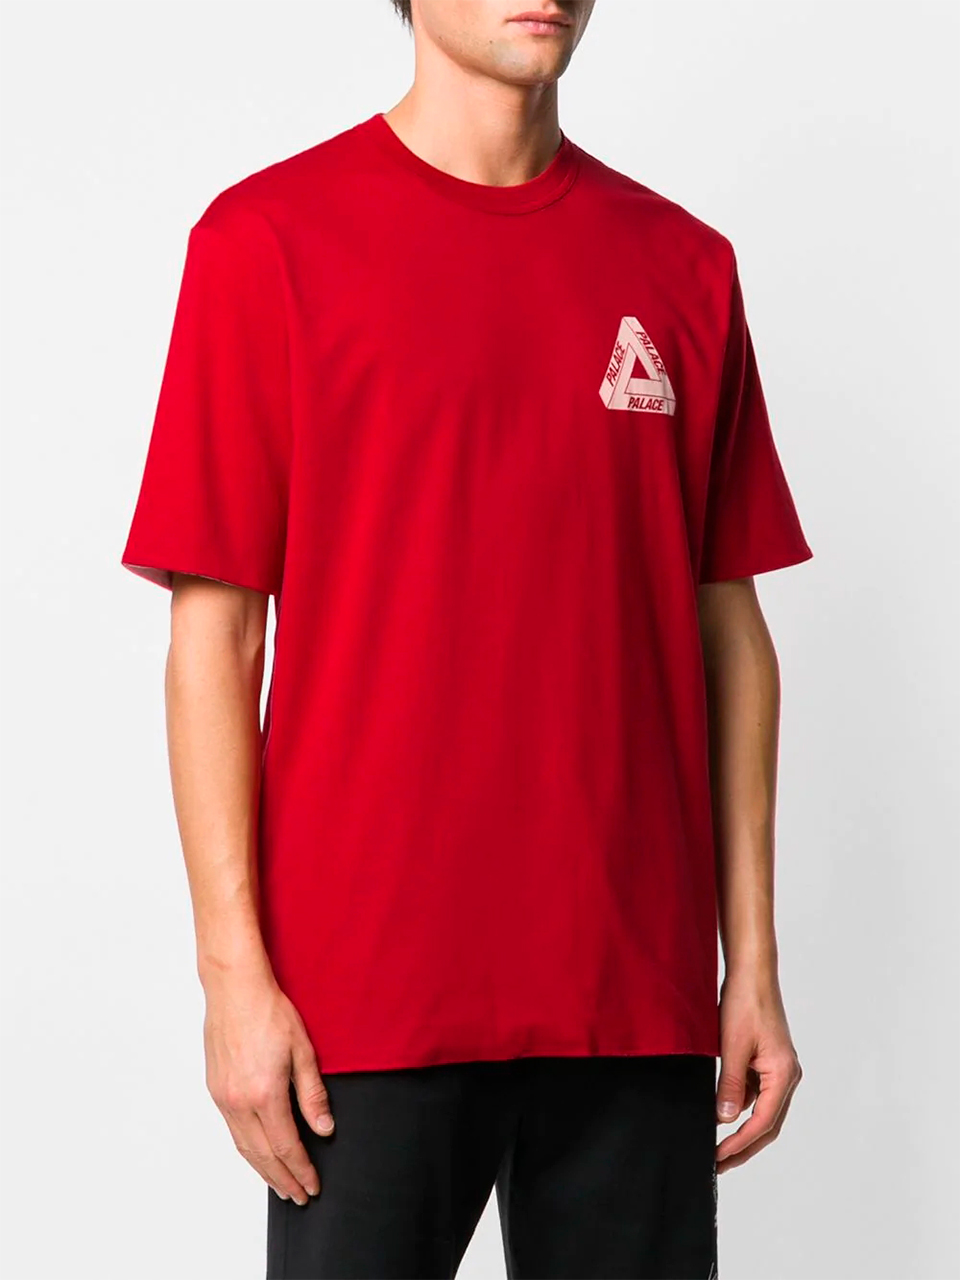 Imagem de: Camiseta Palace Vermelha com Logo